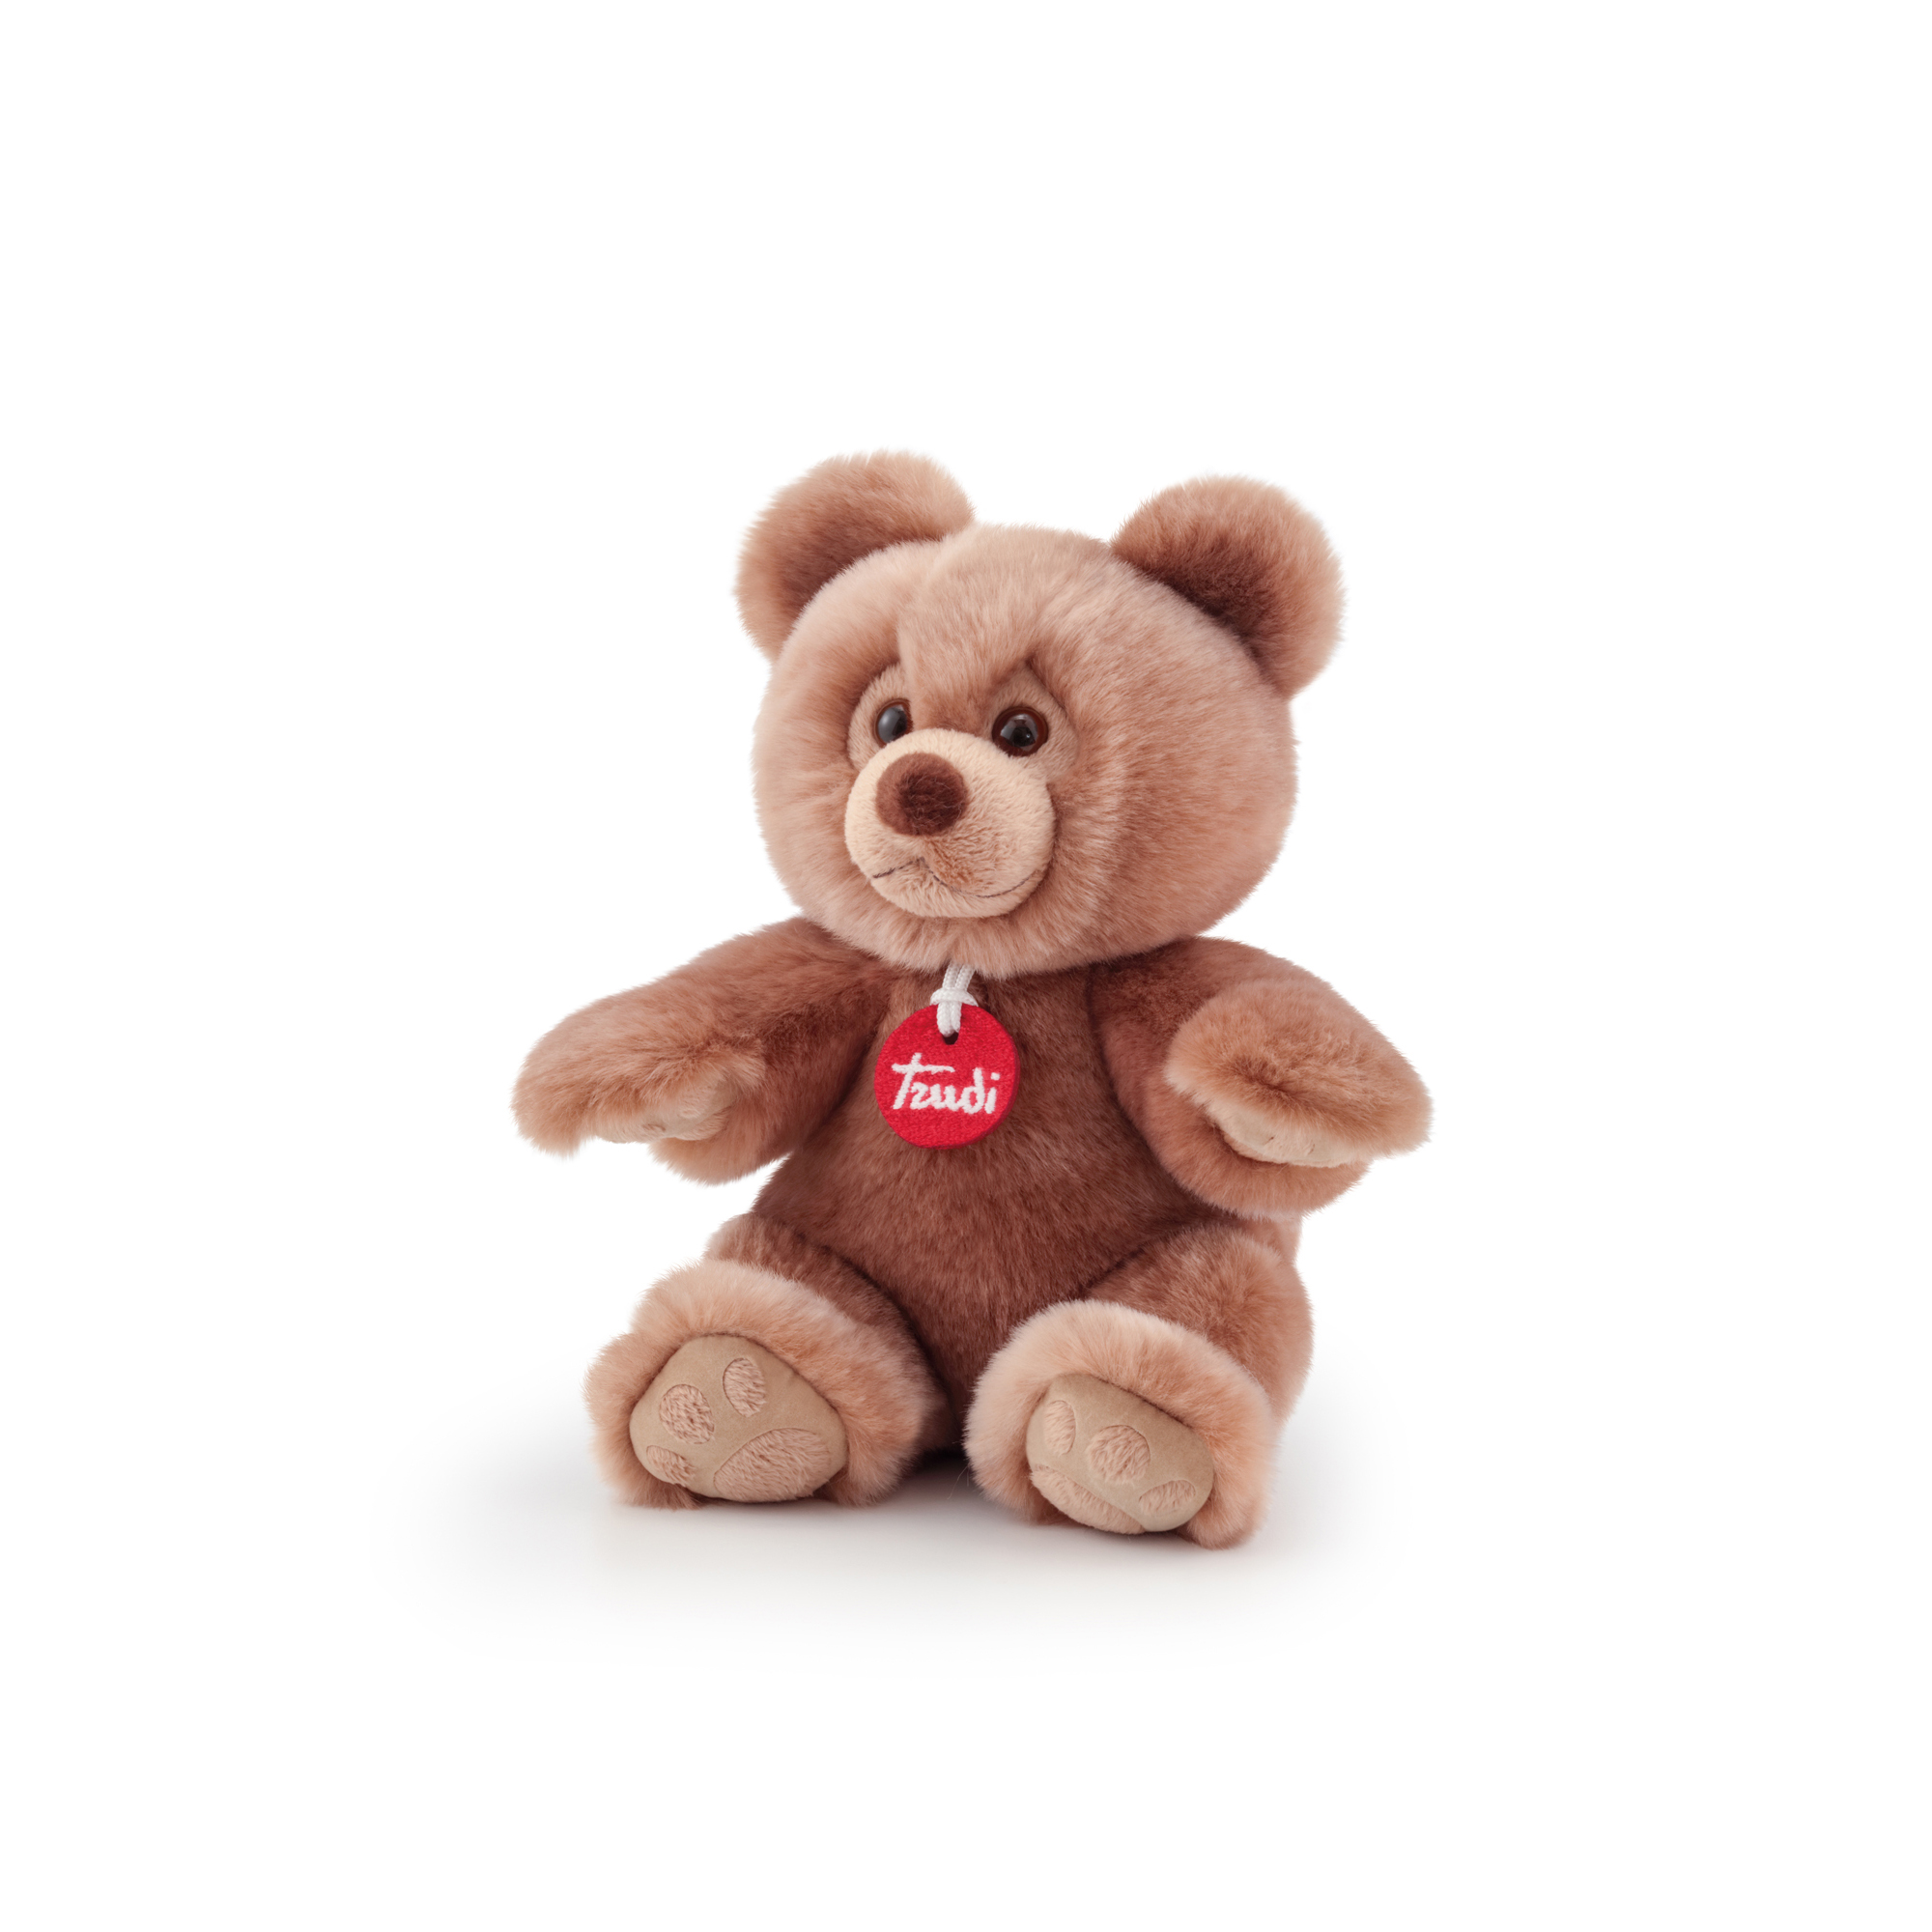 Peluche orso brando marrone 23 cm - Trudi